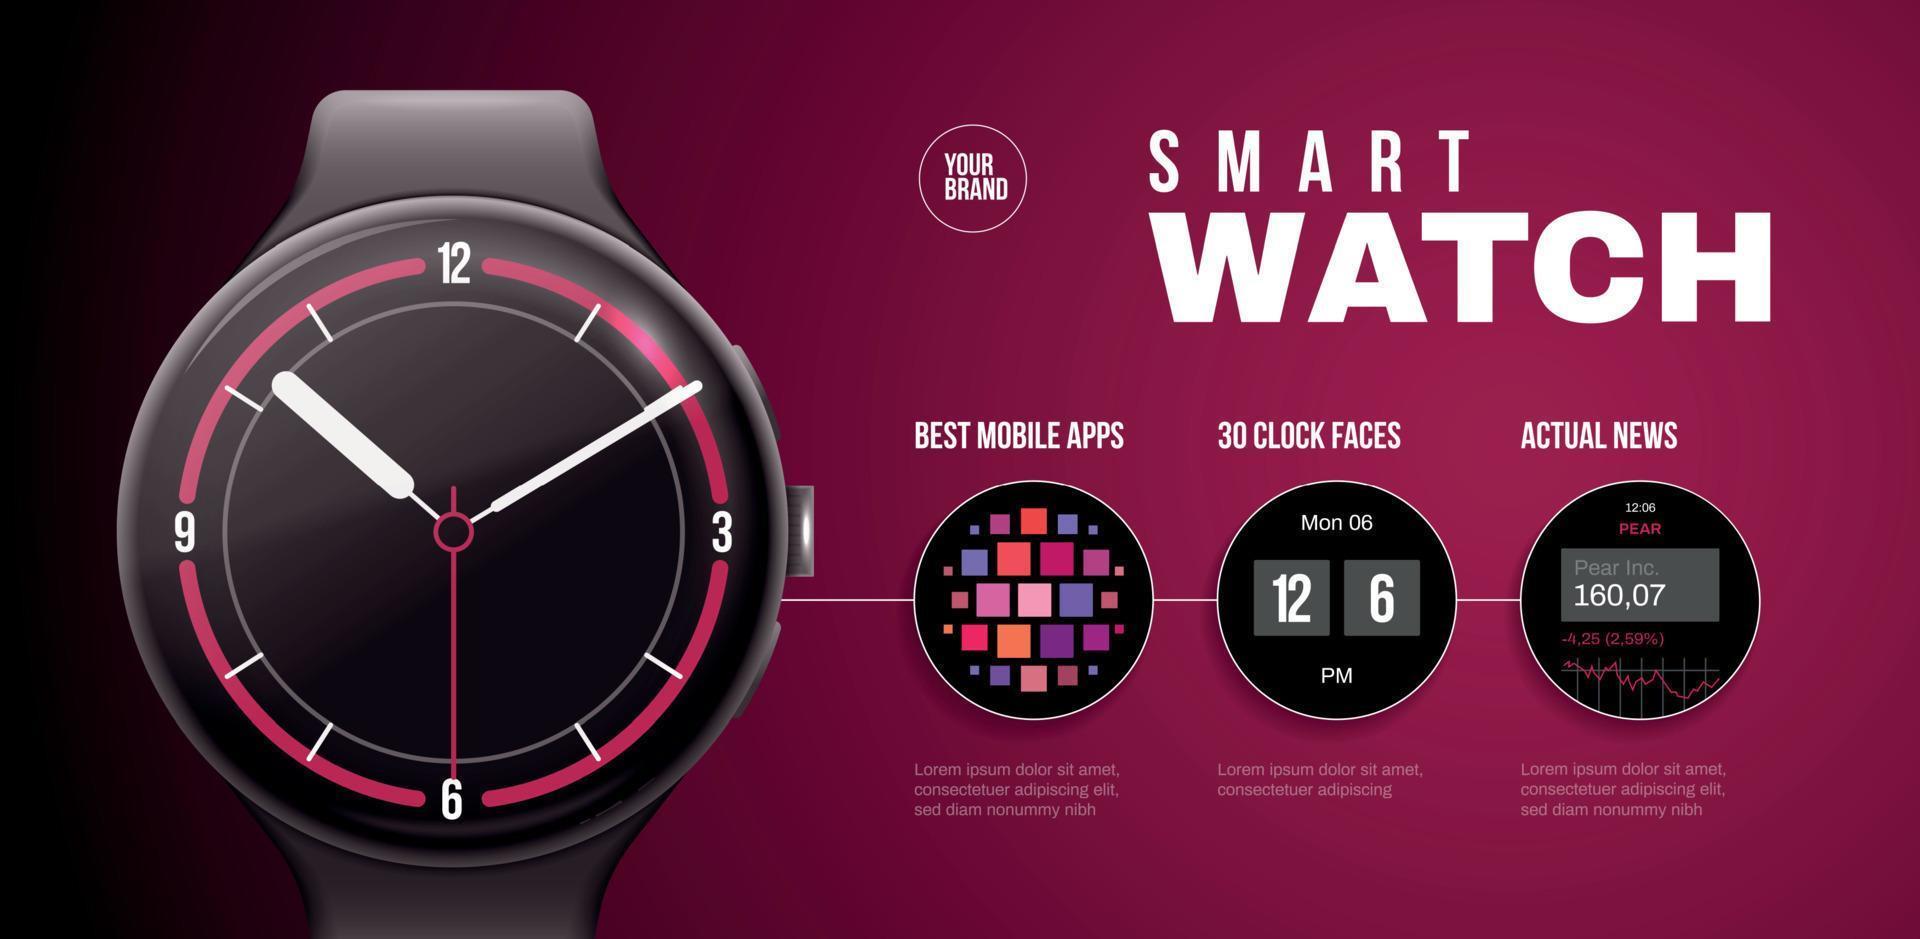 Smart Watch Horizontal Poster vector